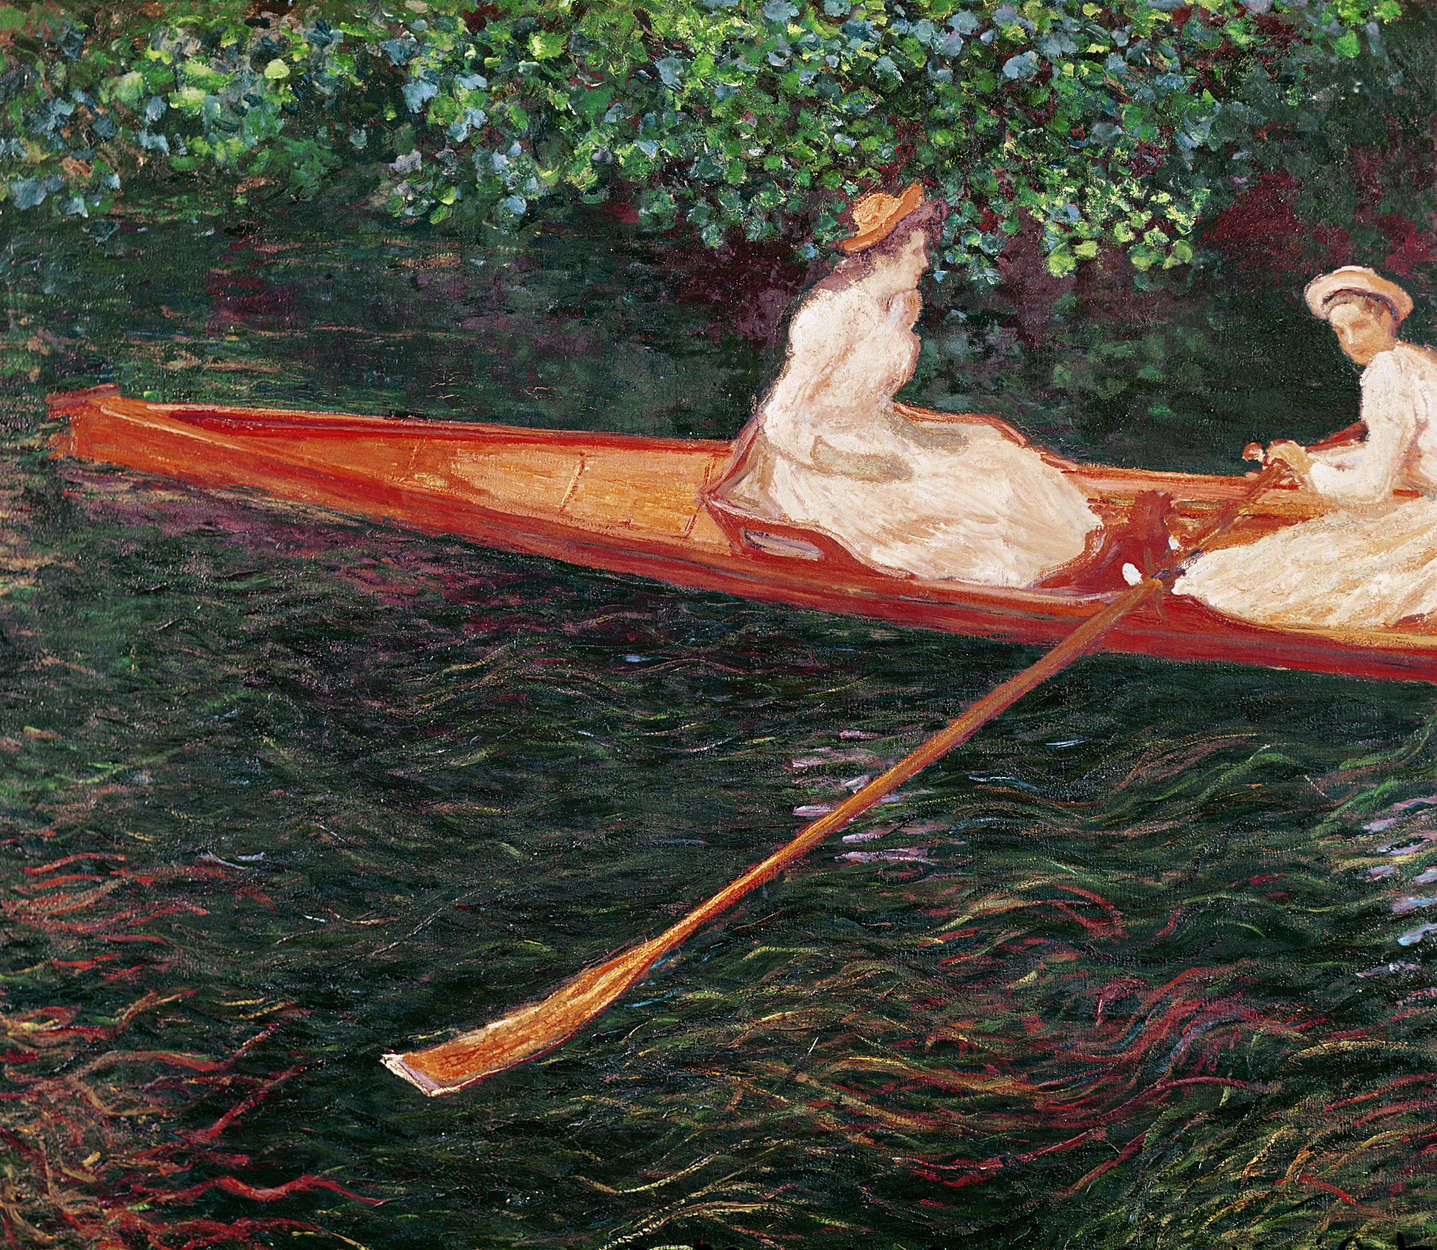             Fototapete "Bootfahren auf dem Fluss Epte" von Claude Monet
        